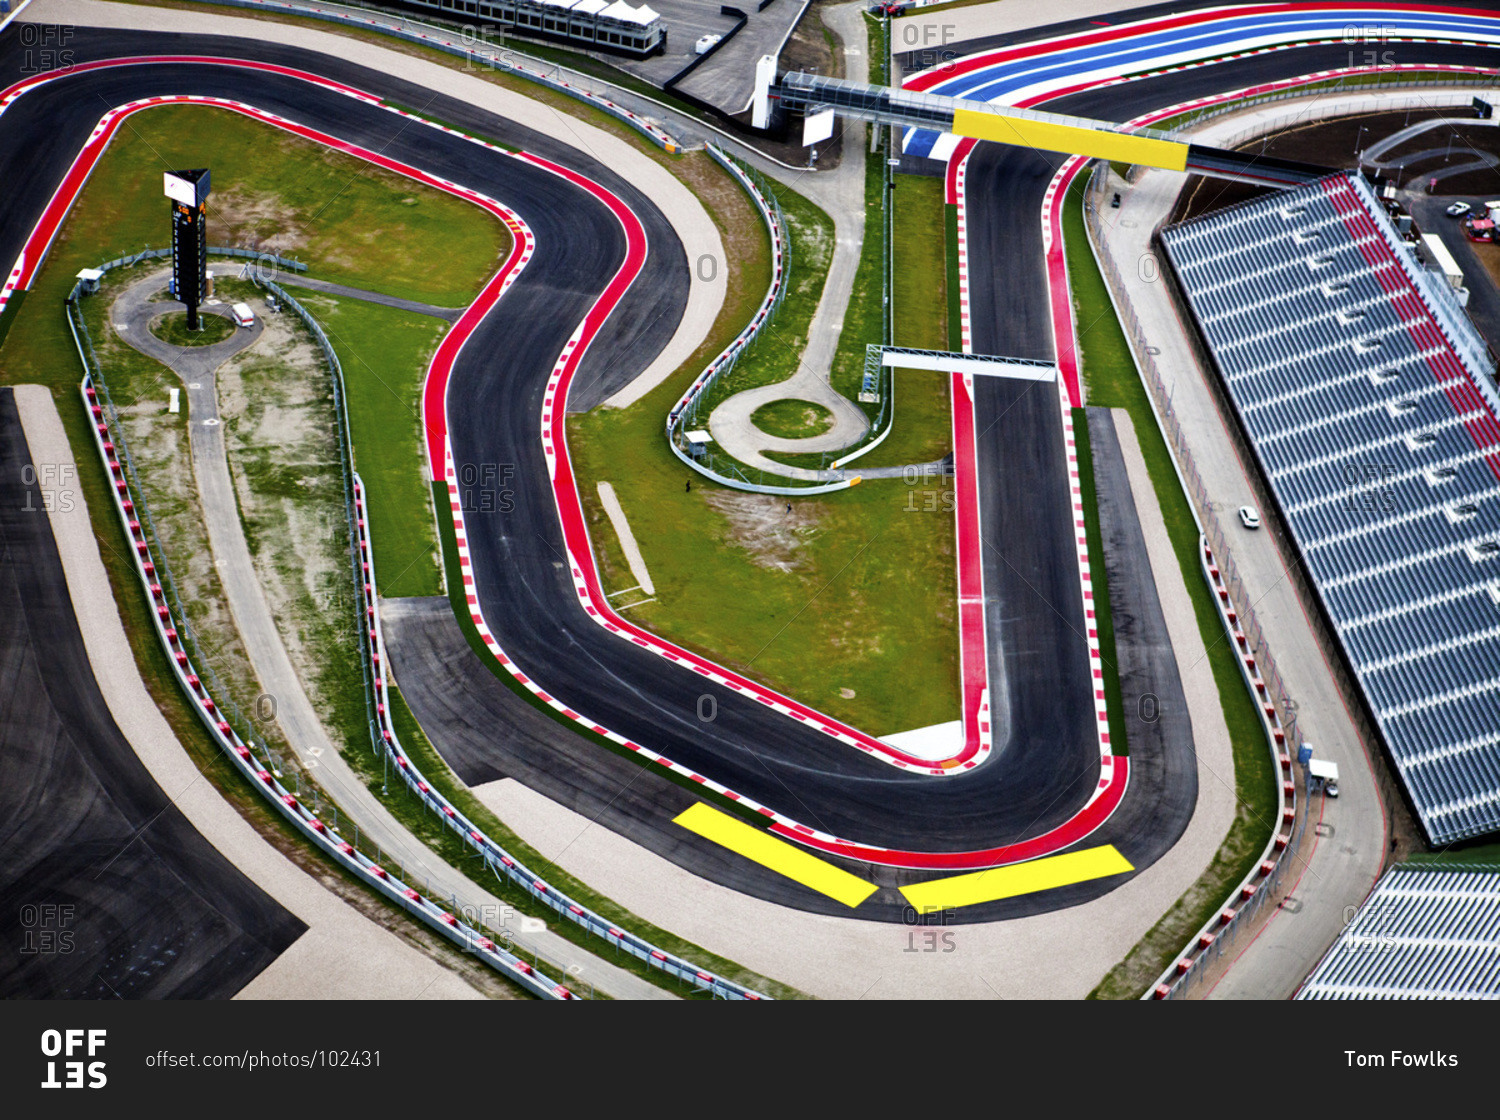 F1 вид сверху. F1 track. F1 Racing circuits. Трасса f1 Шотландия. Formula 1 circuit.